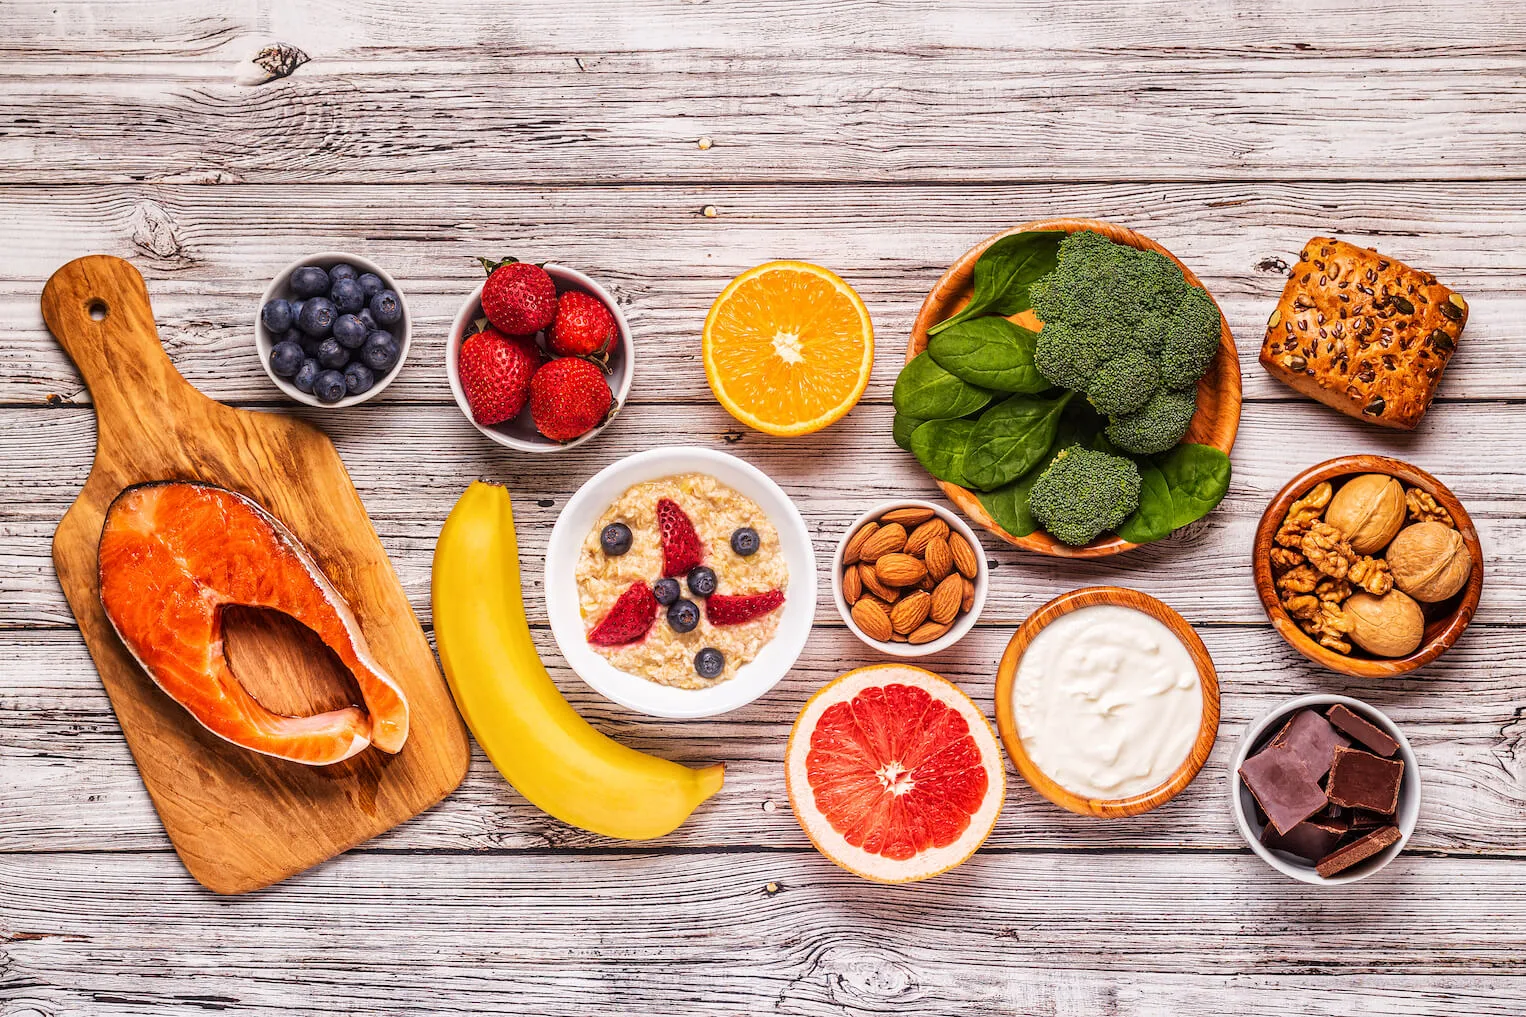 麥得飲食：益腦食物莓果、魚類、堅果、全穀類、綠色蔬菜